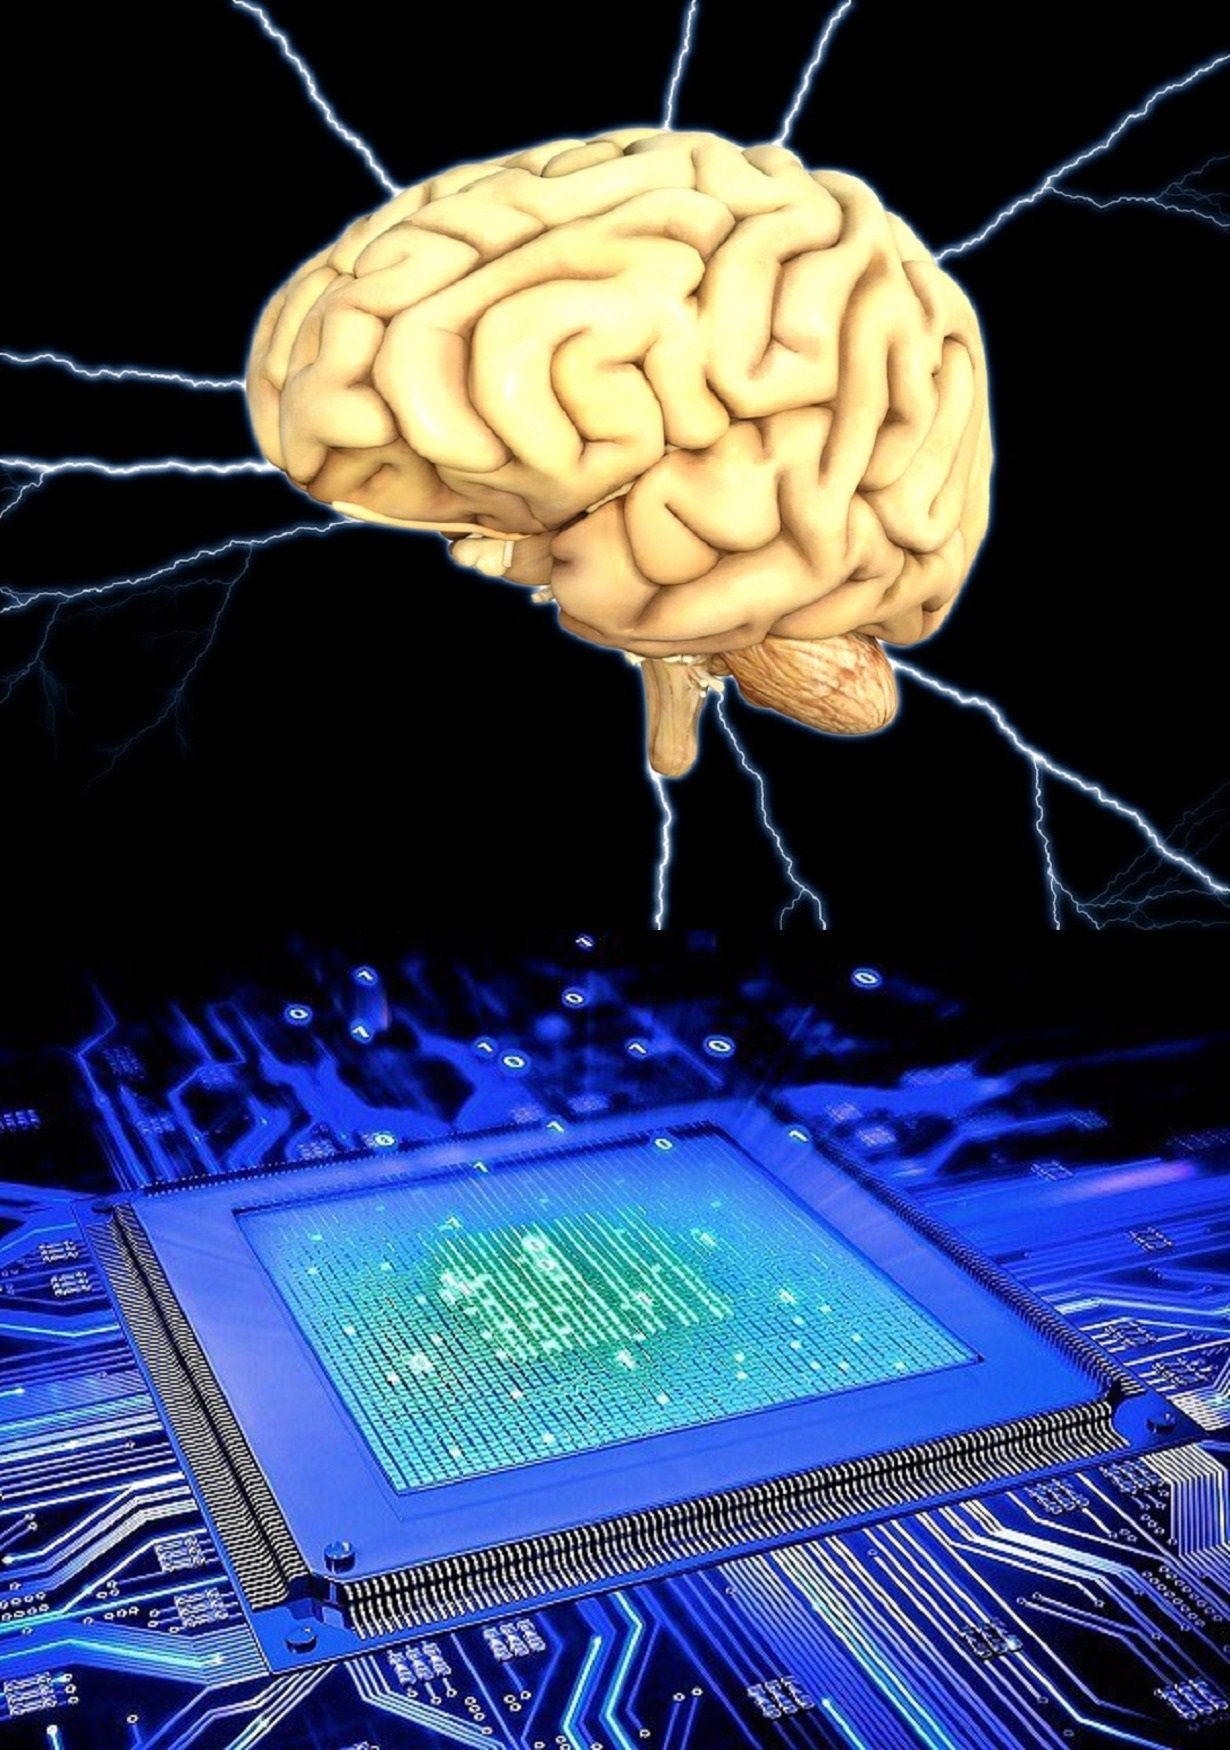 Памяти мощнейшим процессором и. Мозг компьютера. Компьютер и человеческий мозг. Искусственный интеллект компьютер. Память человека и компьютера.